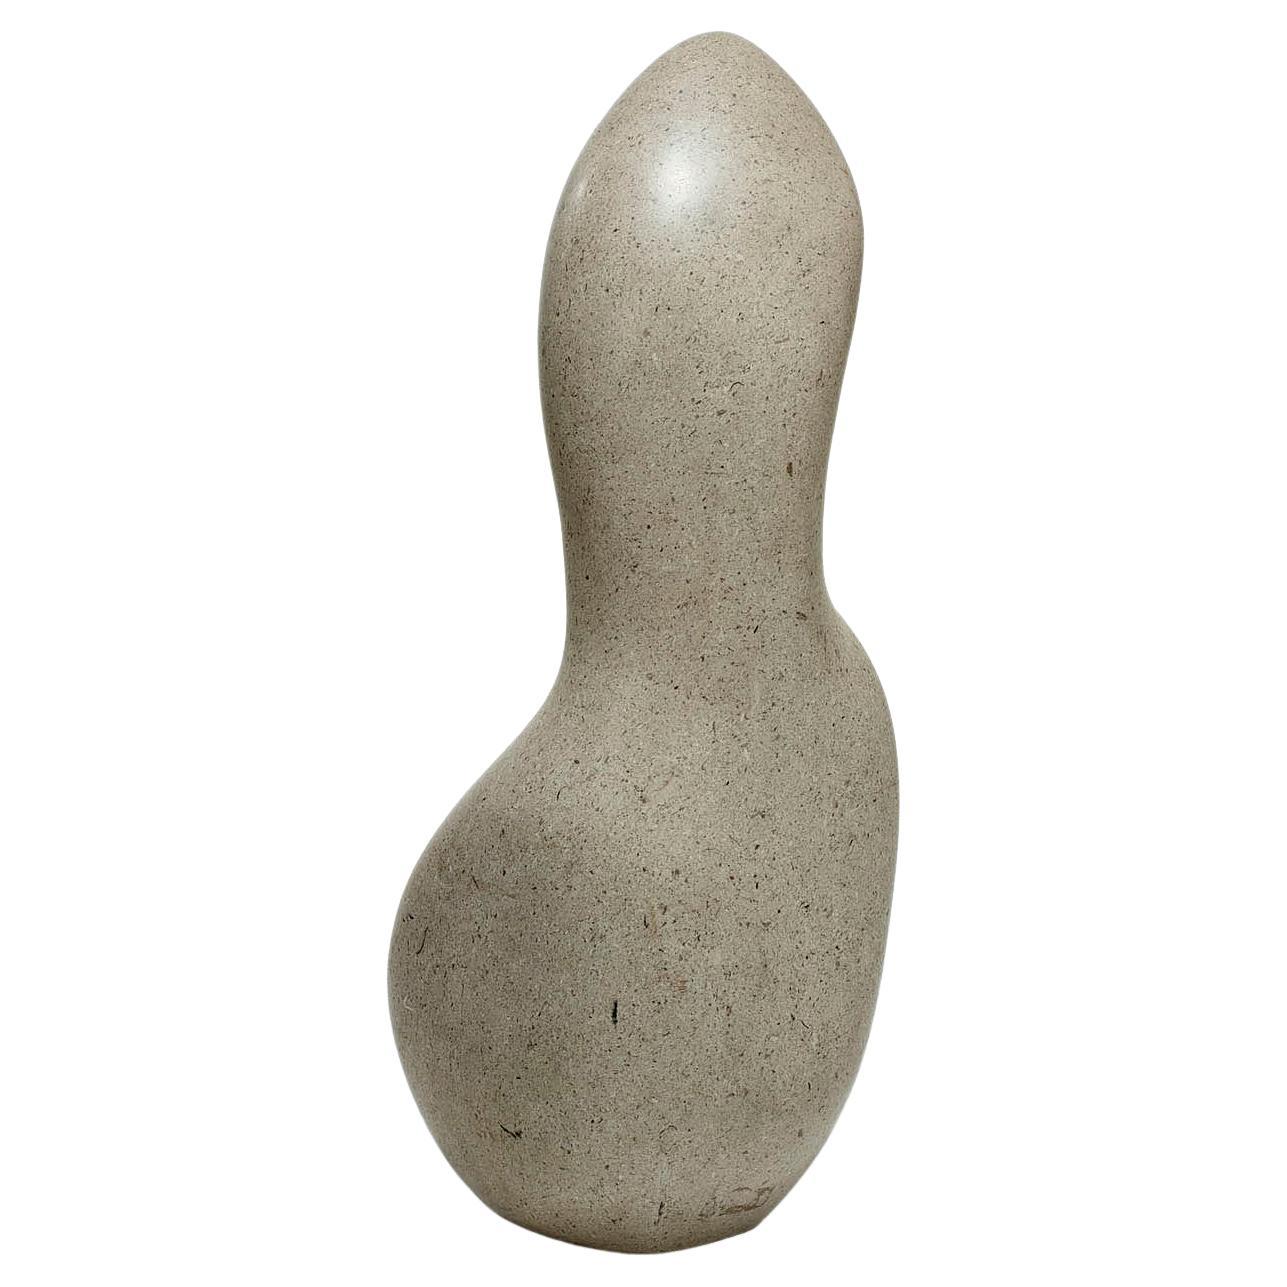 Sculpture abstraite en granit de bonne taille représentant une forme féminine dans la veine de l'œuvre de Dame Barbara Hepworth. Elle n'est pas signée mais est manifestement l'œuvre d'un sculpteur très accompli. Sa forme lisse est très agréable au